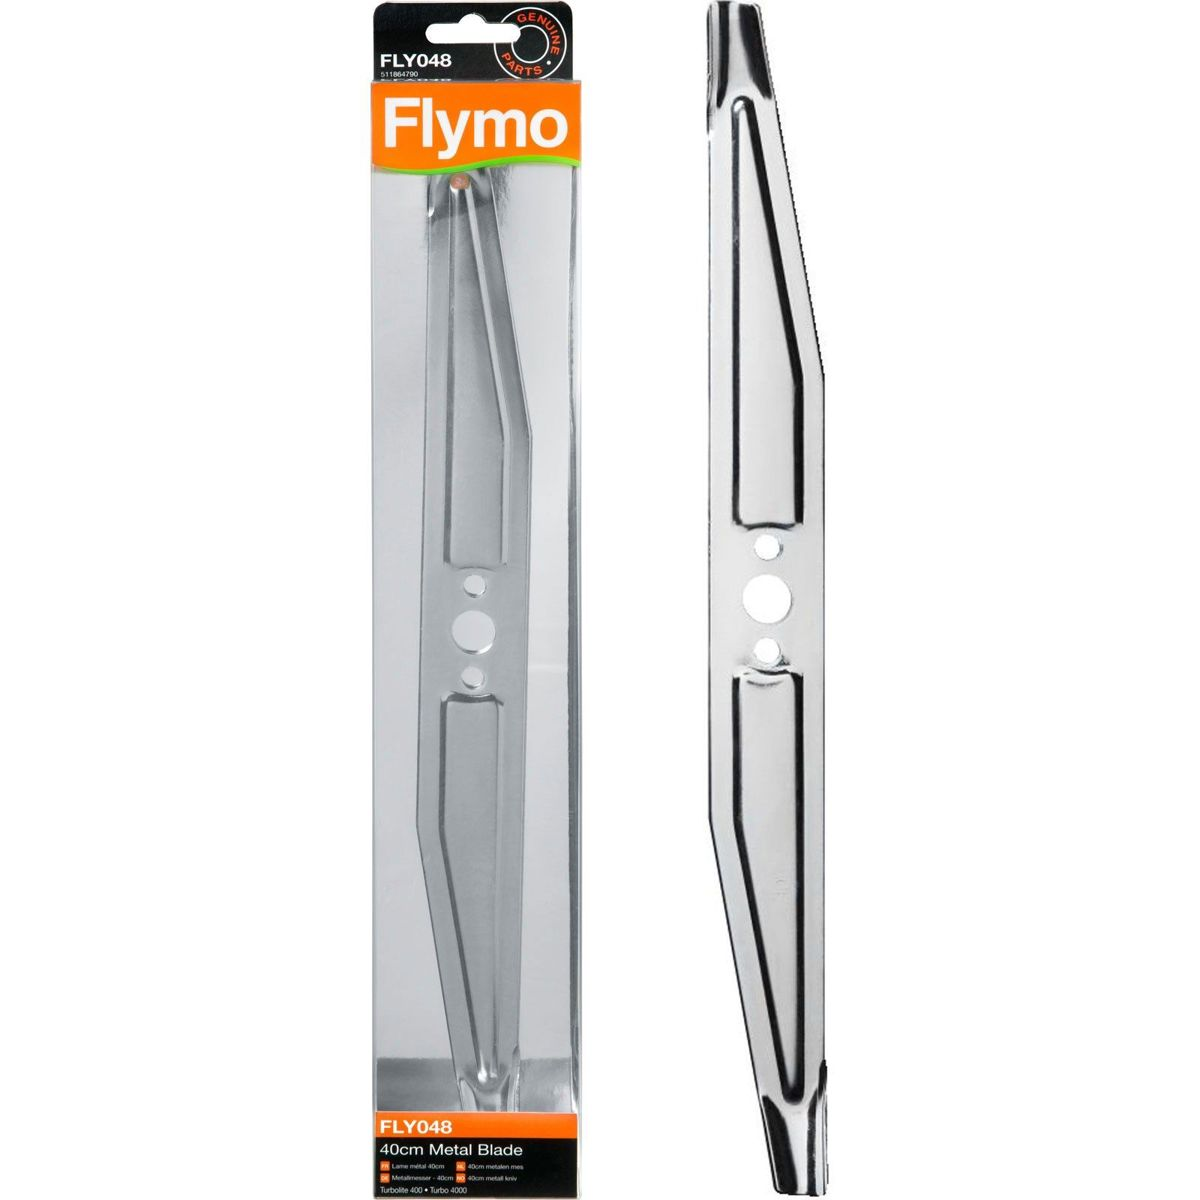 Flymo fly048 maaimes turbo 40cm